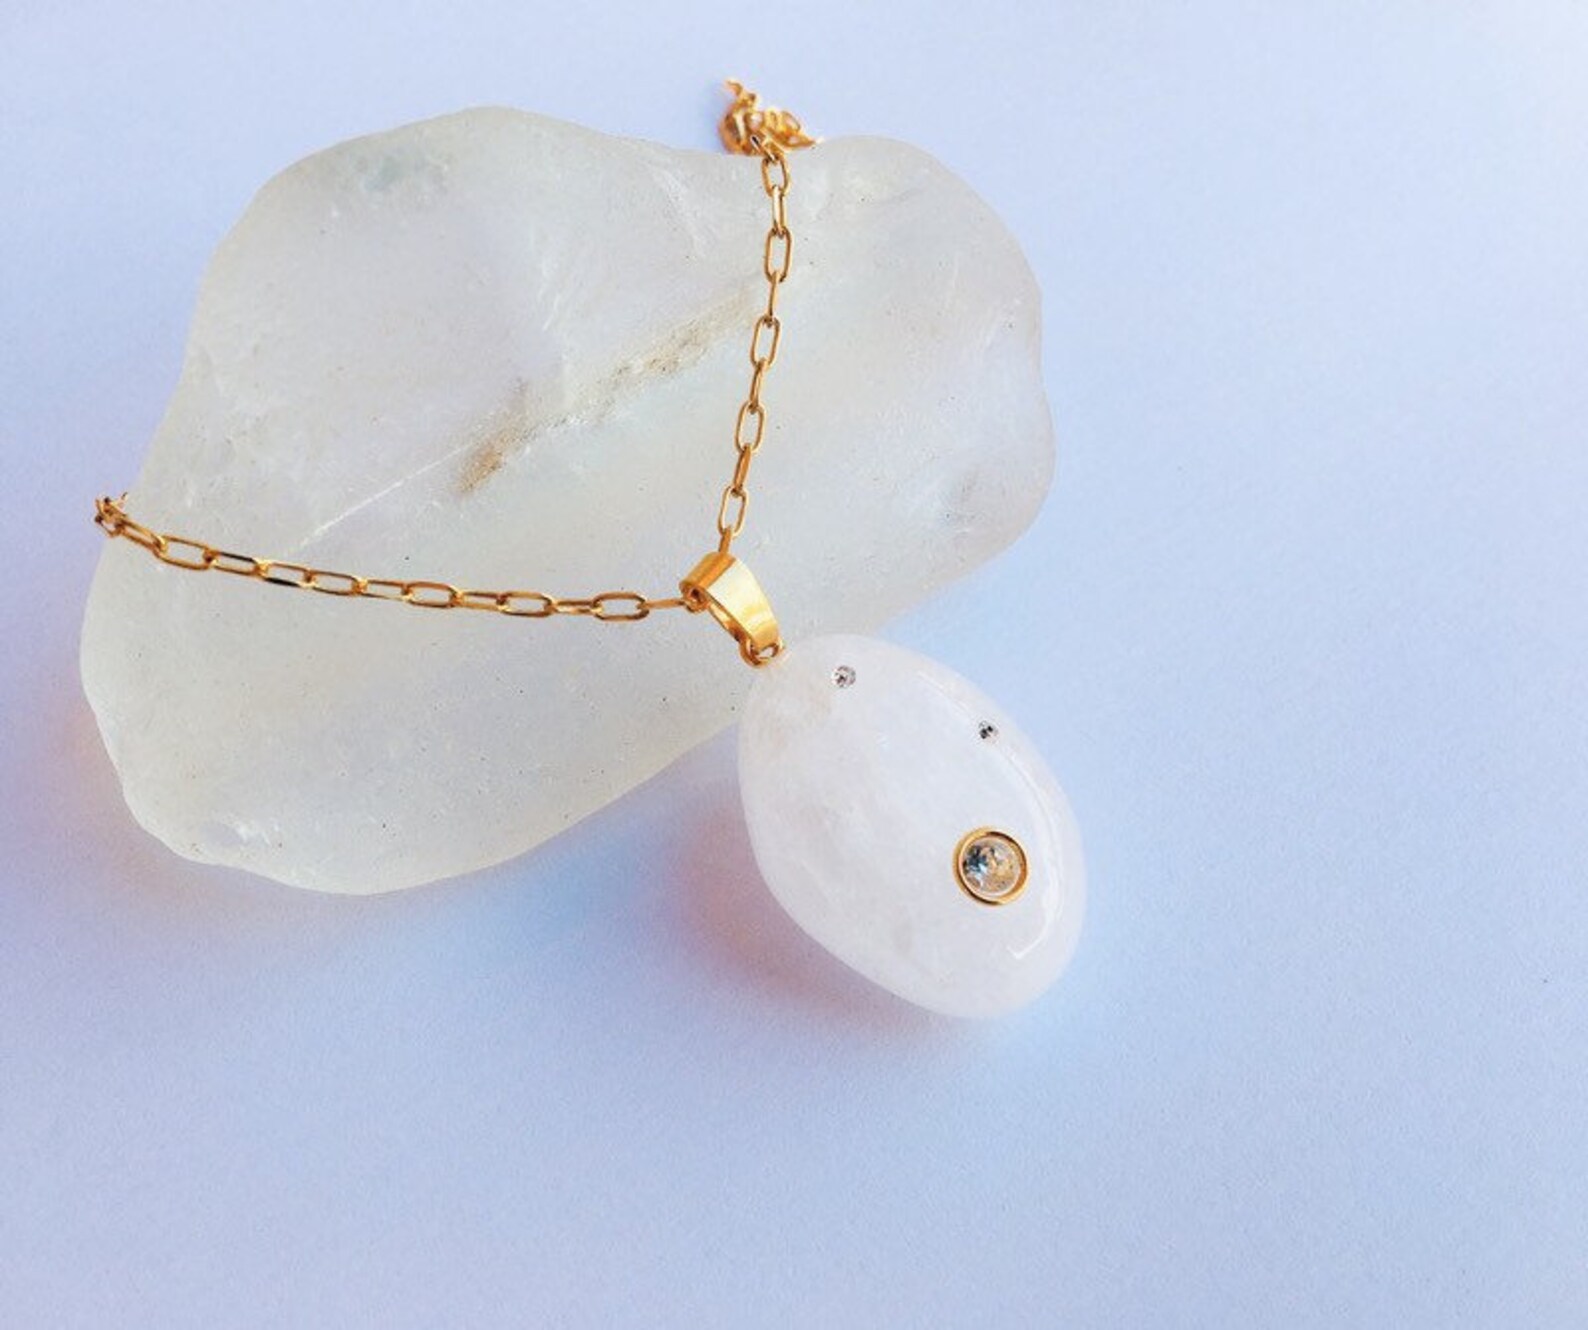 Milky quartz pendant. Snow quartz necklace. Beach quartz | Etsy